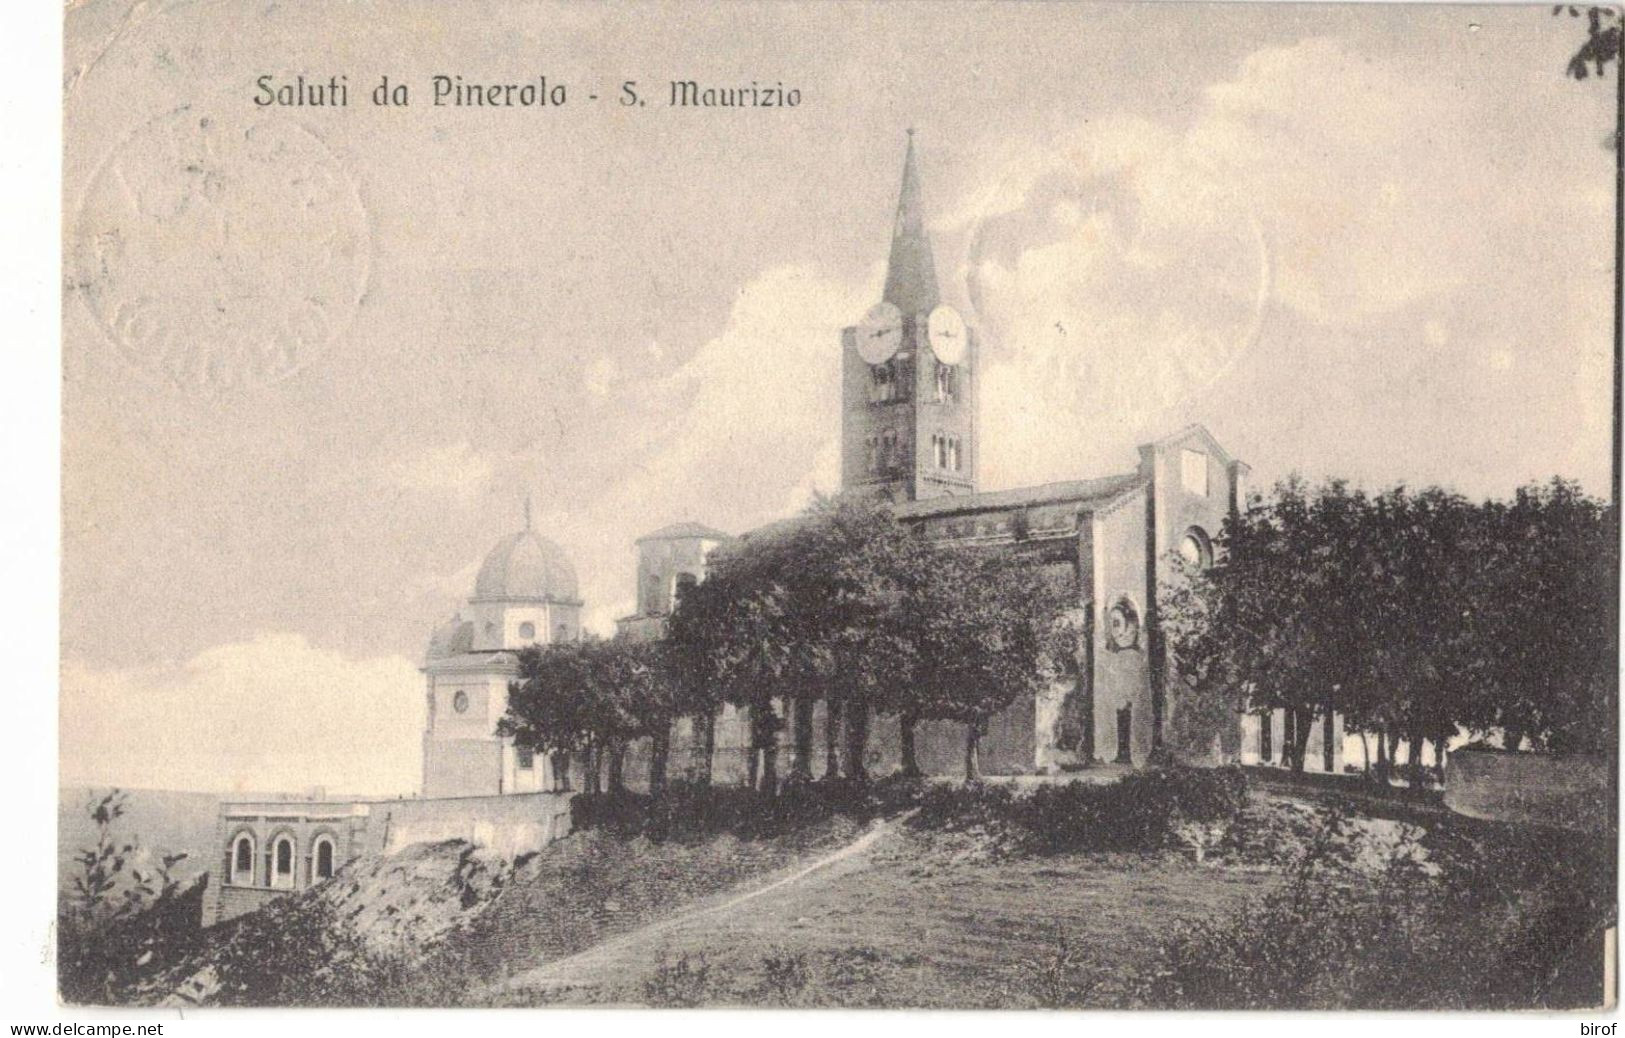 SAUTI DA PINEROLO - S. MAURIZIO (TO) - Churches